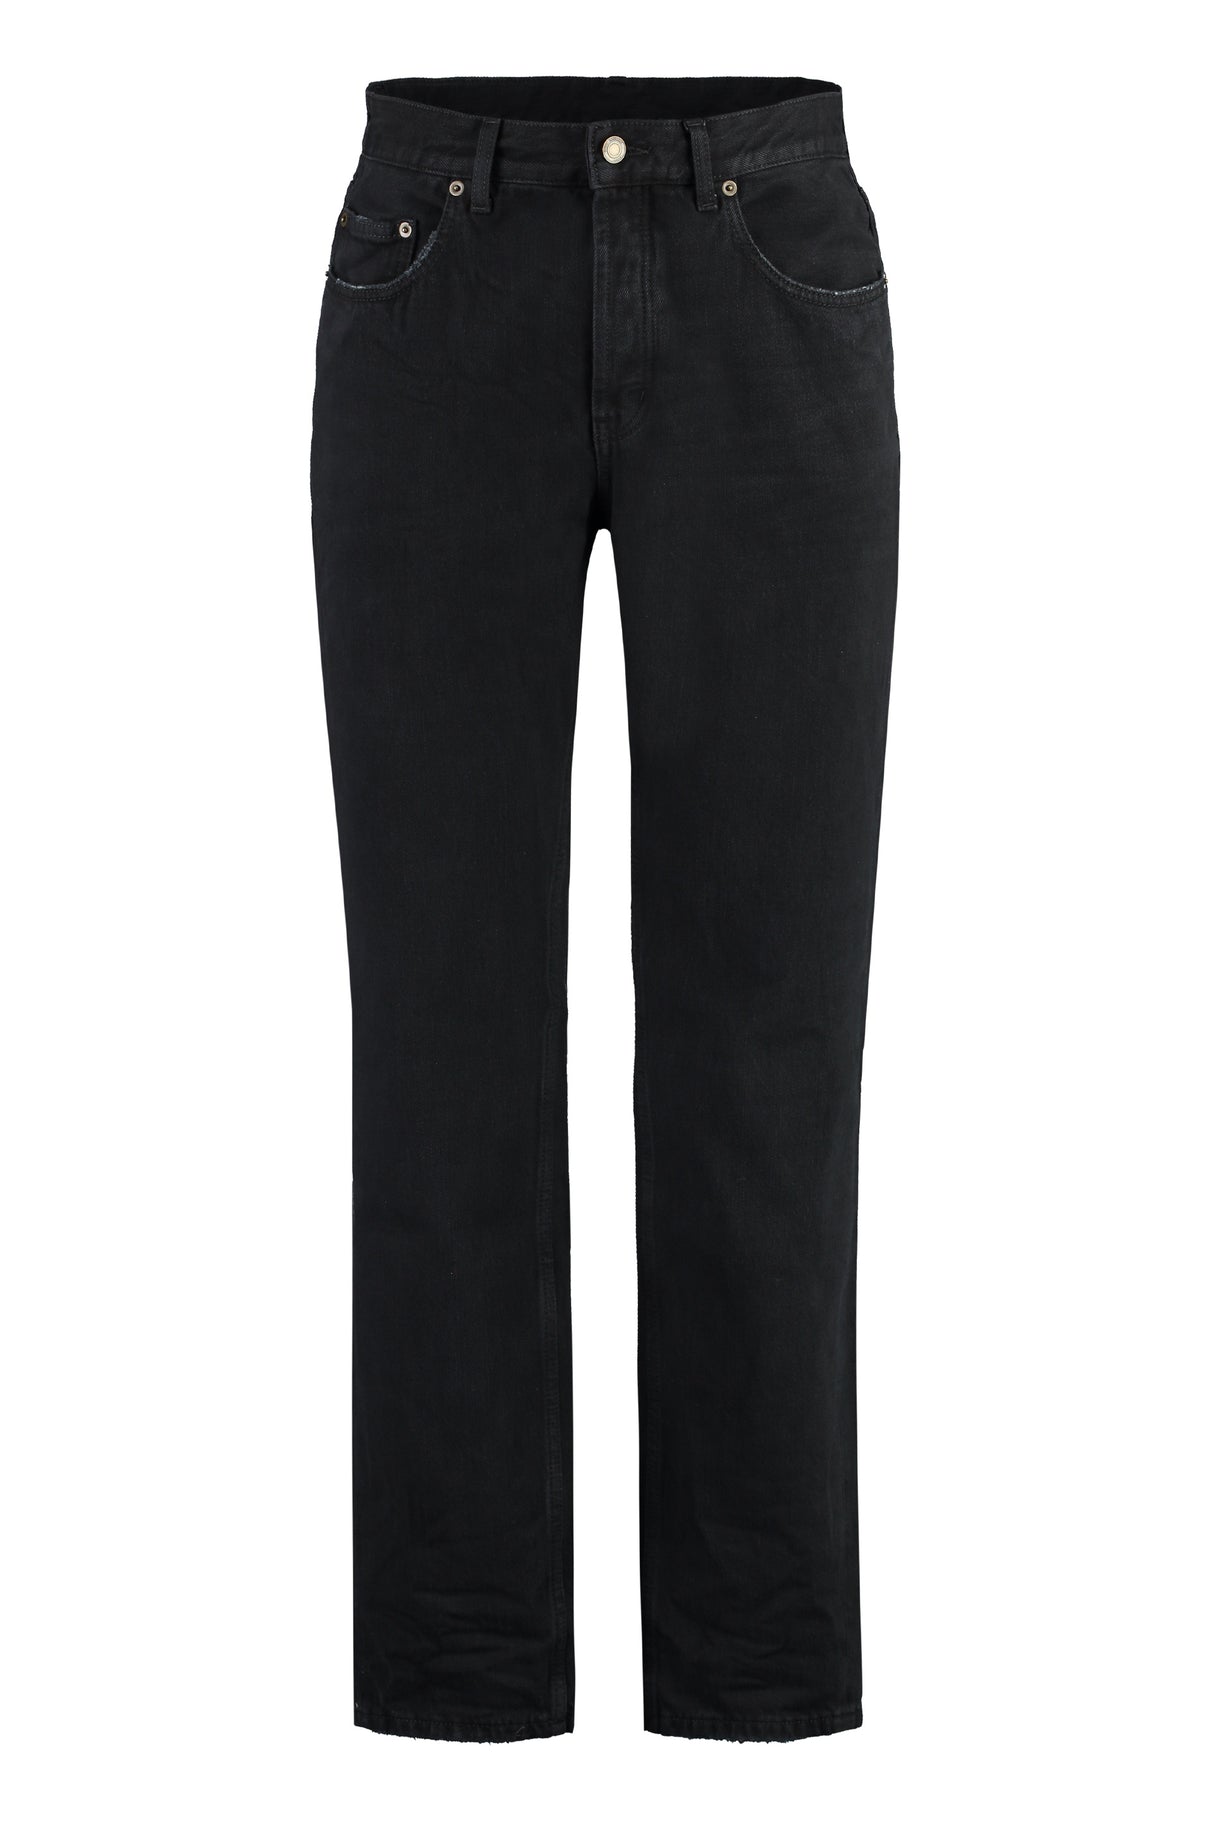 Quần Jean Straight-Leg 5 túi màu đen cho Nam FW23